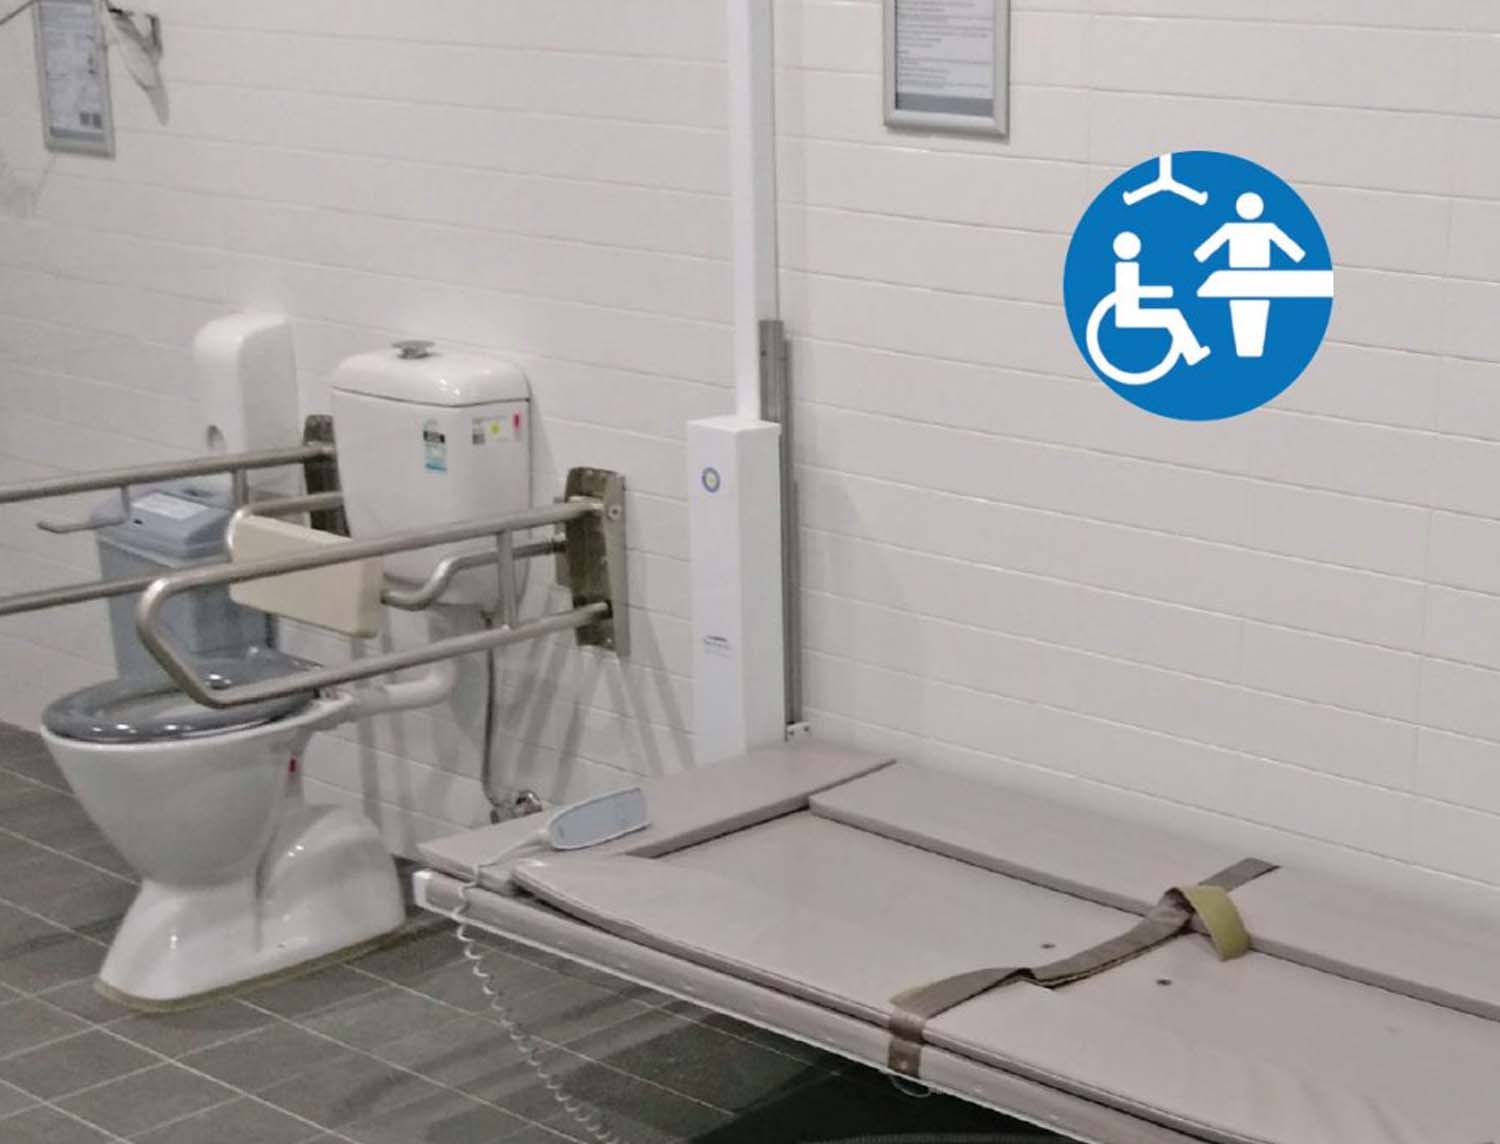 Accessible bathrooms